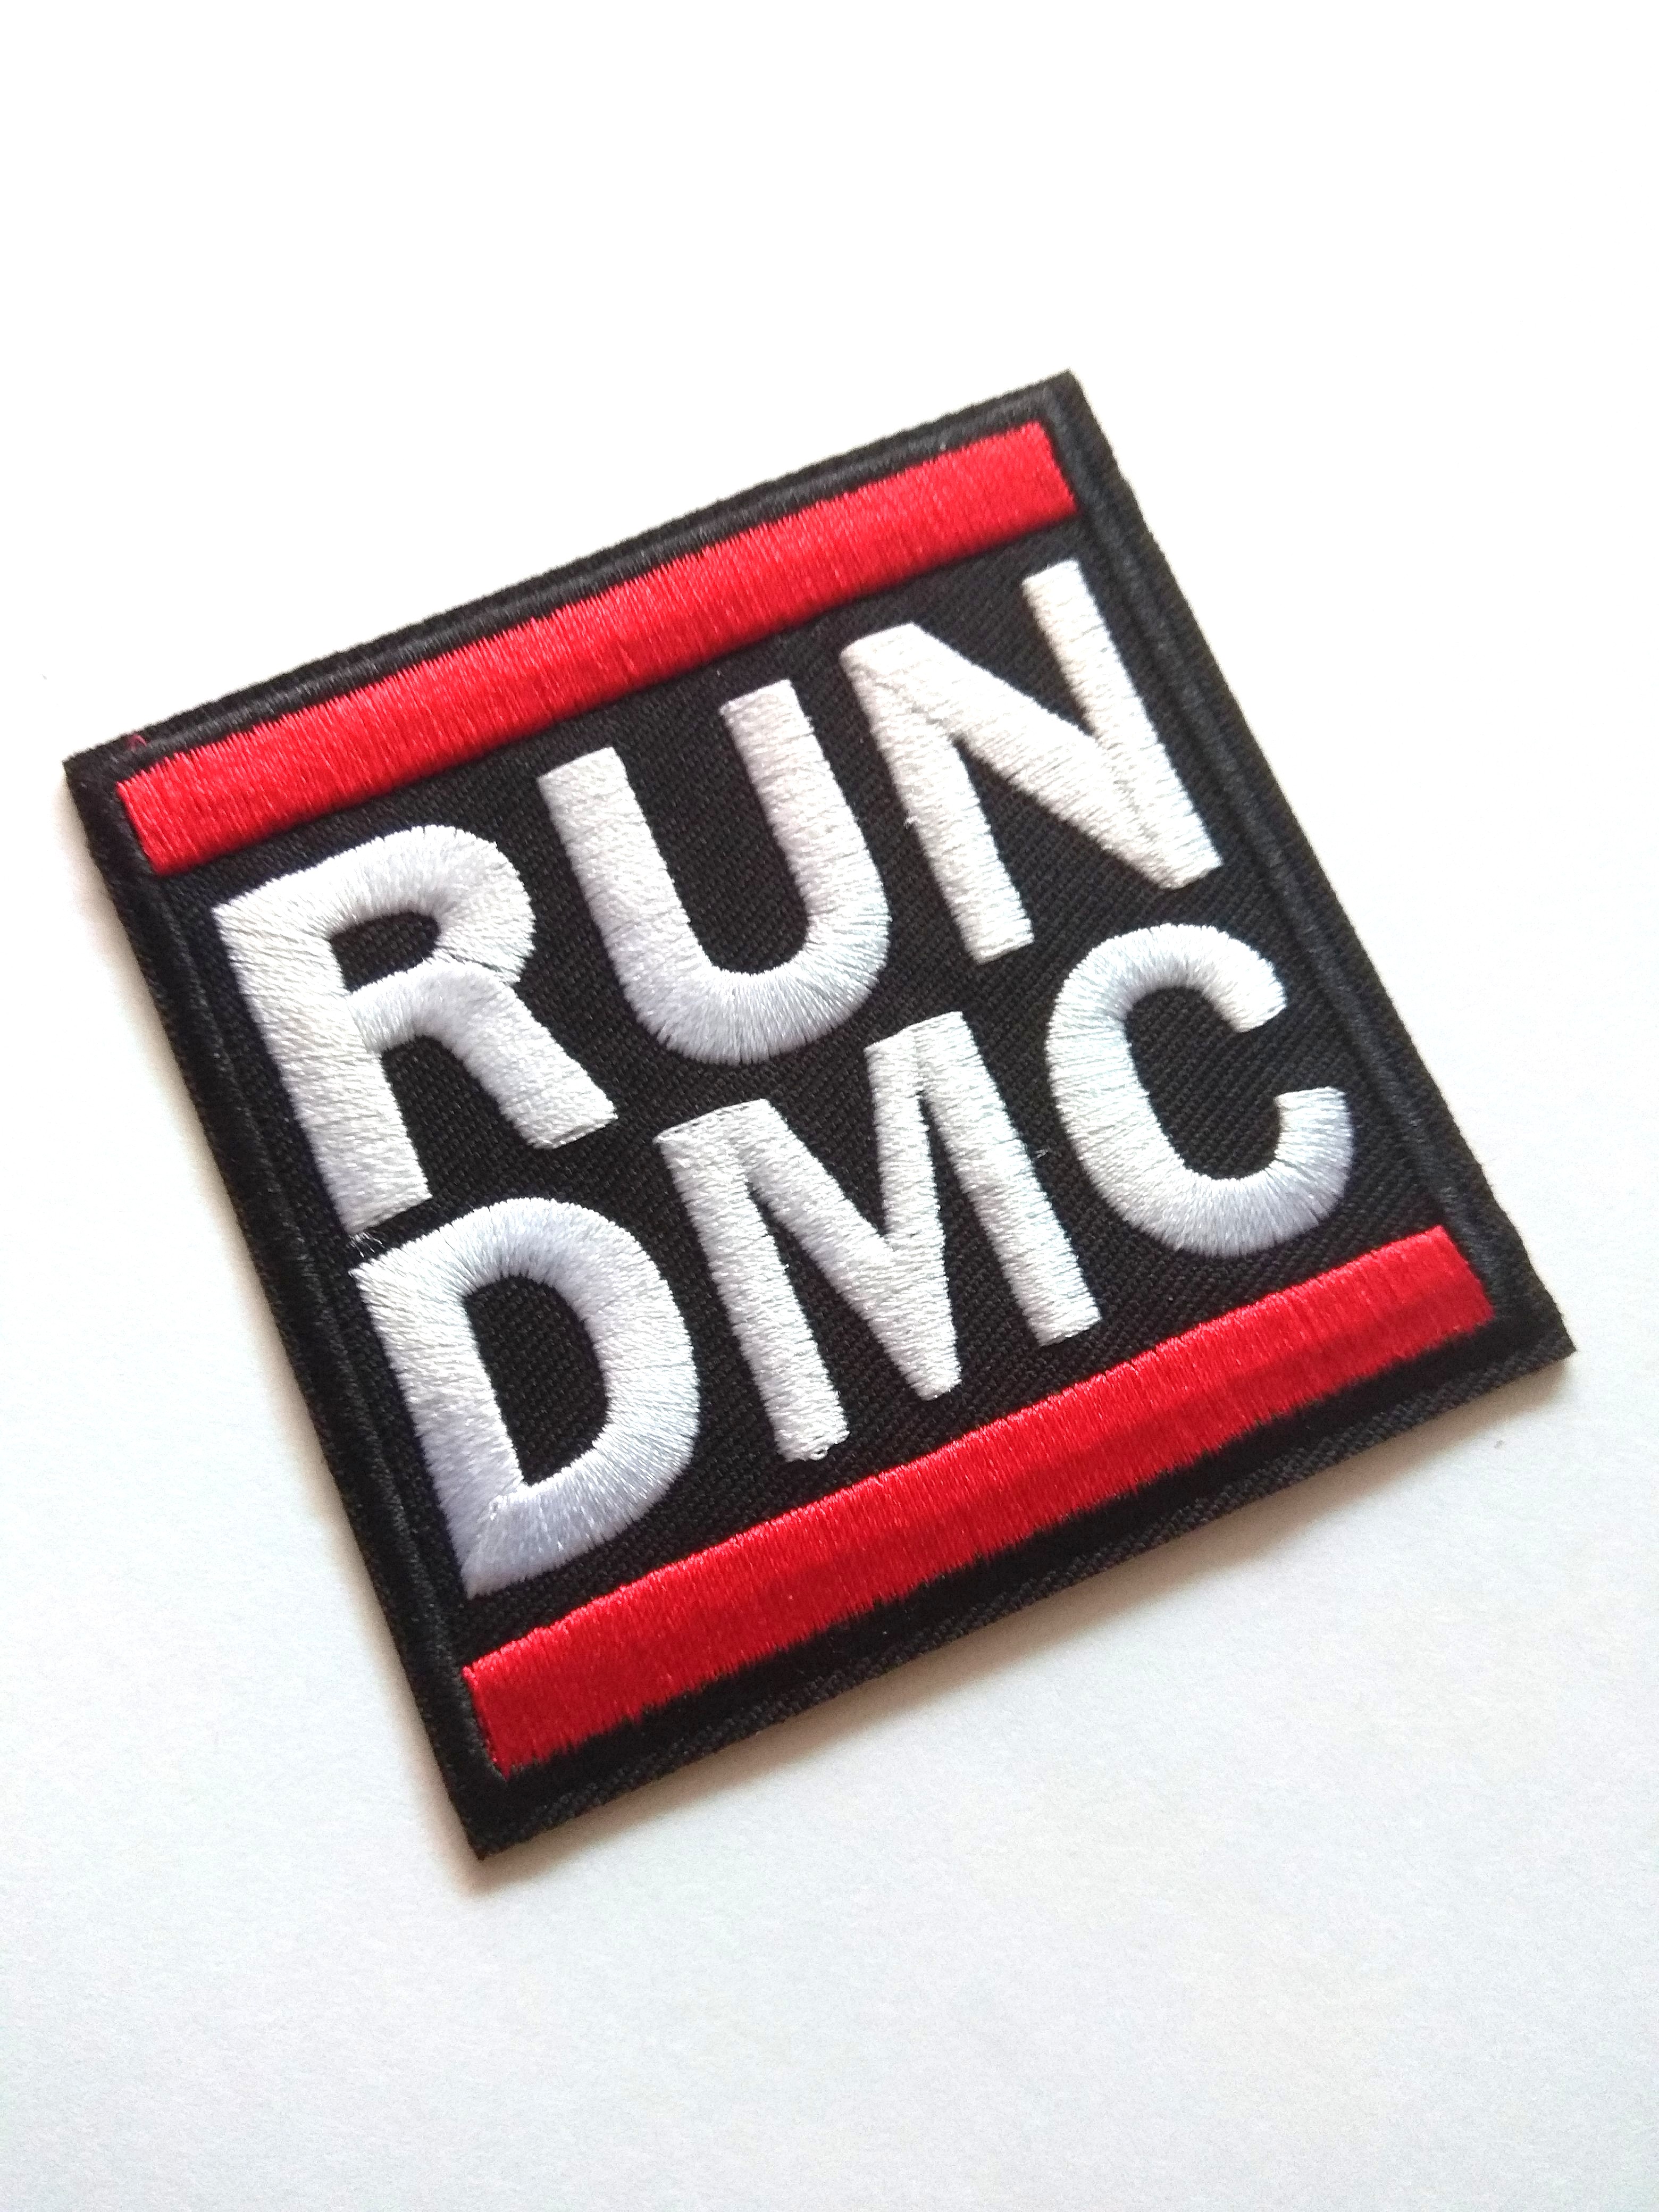 Run Dmc Logo Music Rap Iron On Patch Music Media Music